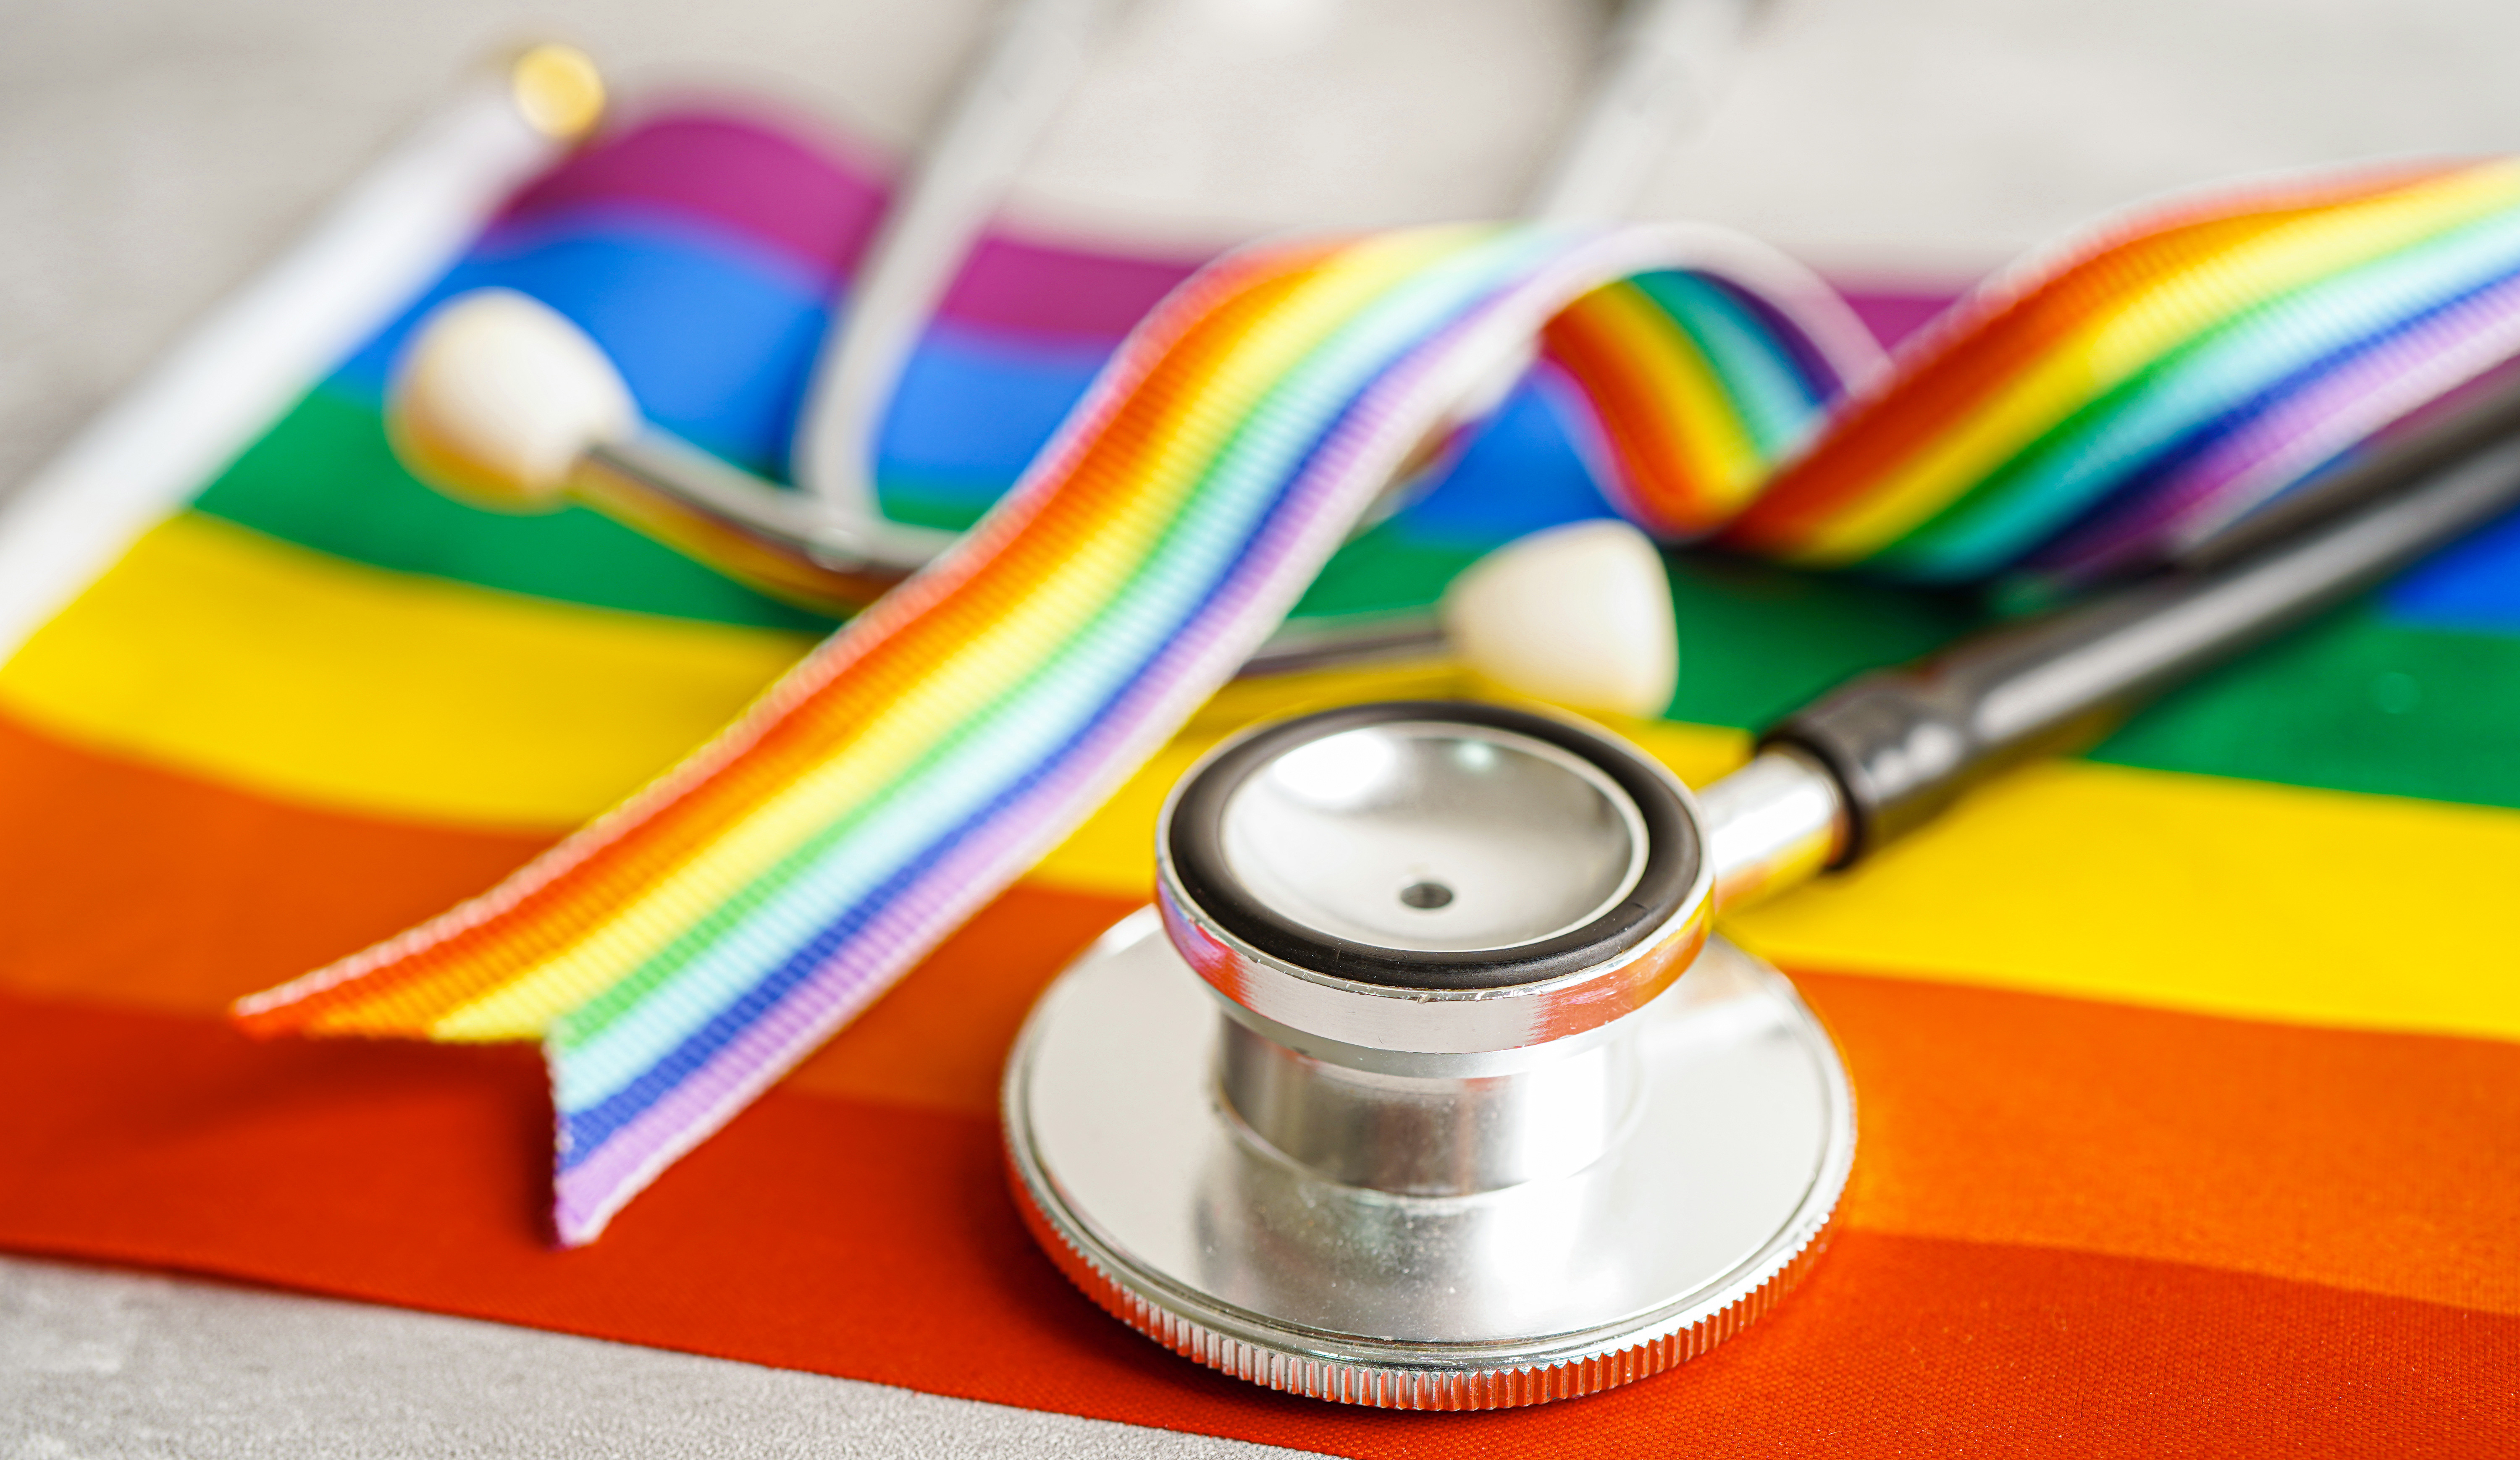 LGBTQIA+-Symbol mit Stethoskop und Regenbogenband für die Rechte und Gleichstellung der Geschlechter auch in Pflege.